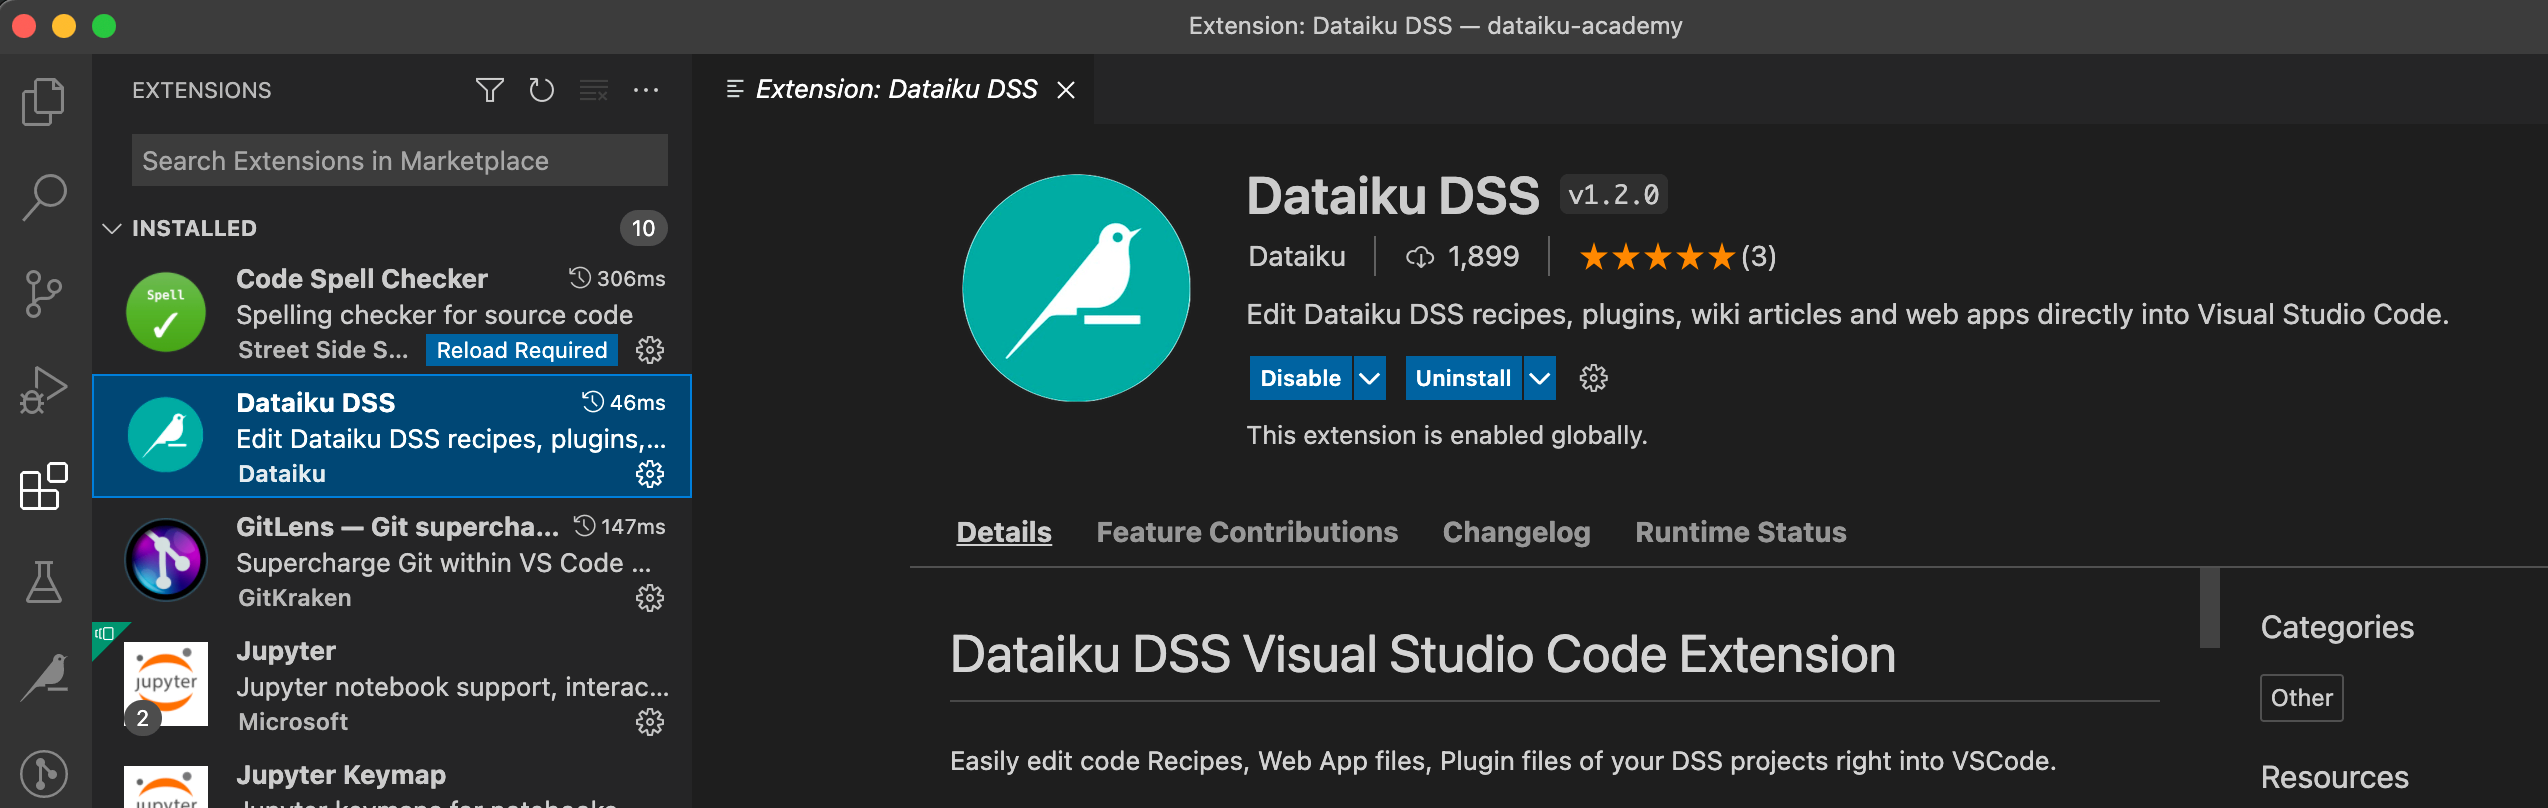 Screenshot of Dataiku DSS extension in VS Code.